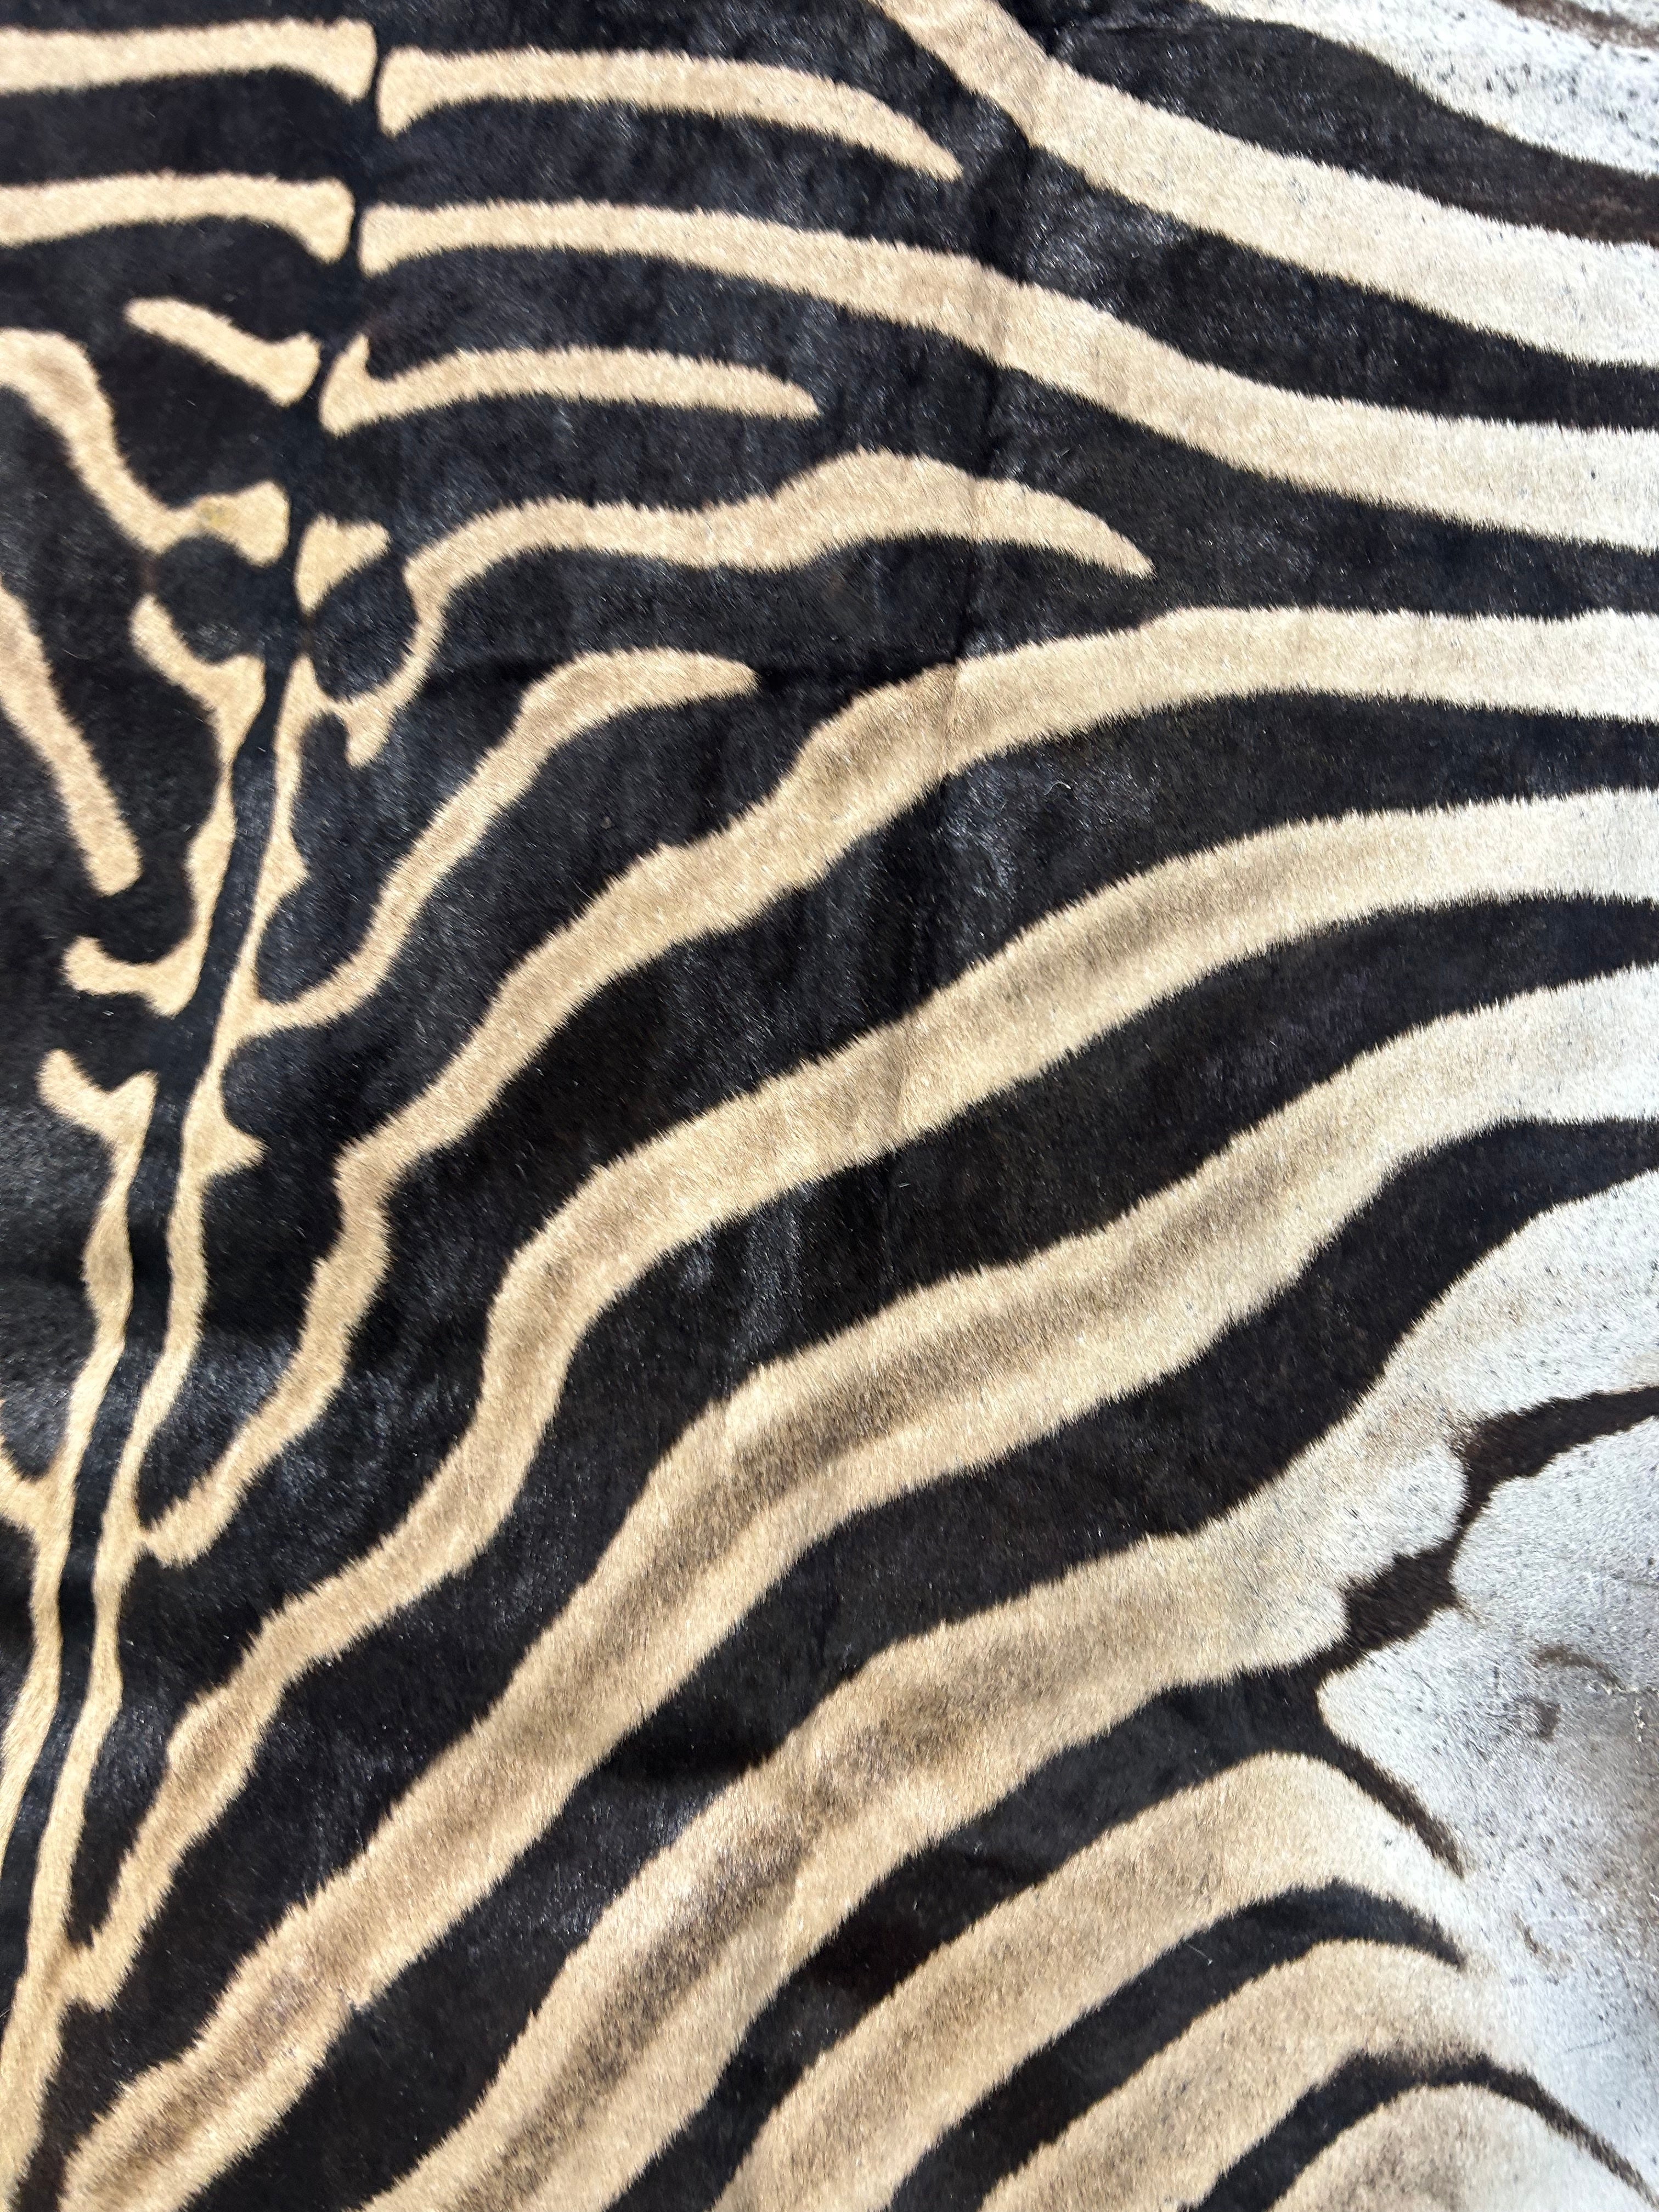 Real Zebra Skin Rug Size: 7 1/2x7 feet NEW Burchell's Hide Zebra Rug #141